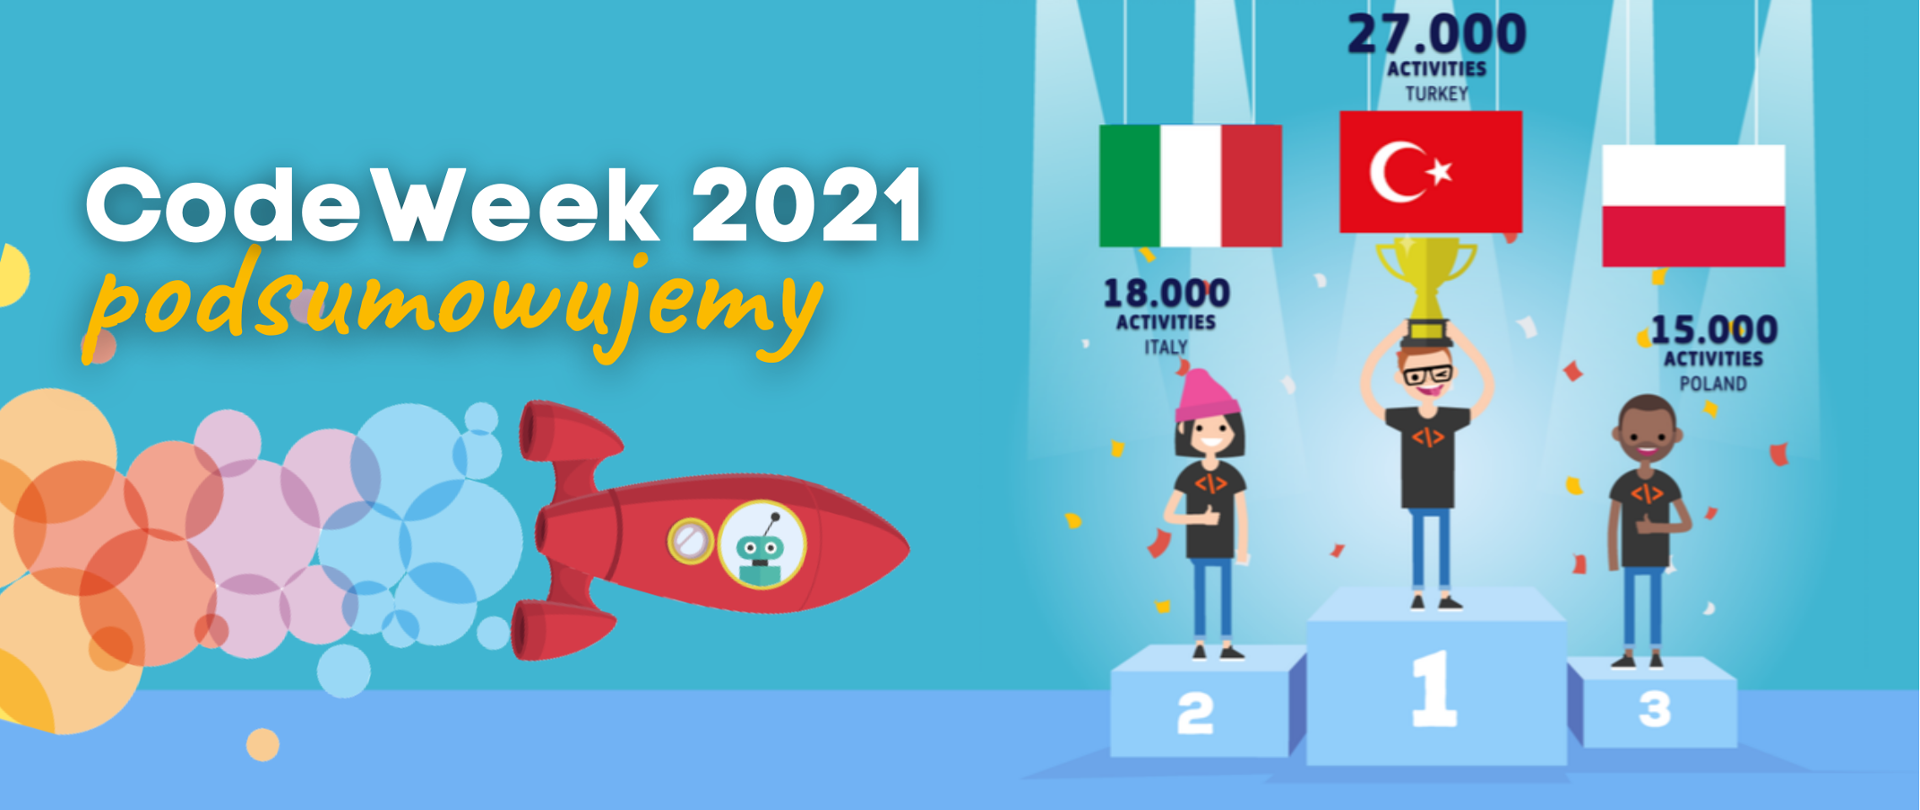 Code Week2021 - Poland 15.000 activities 